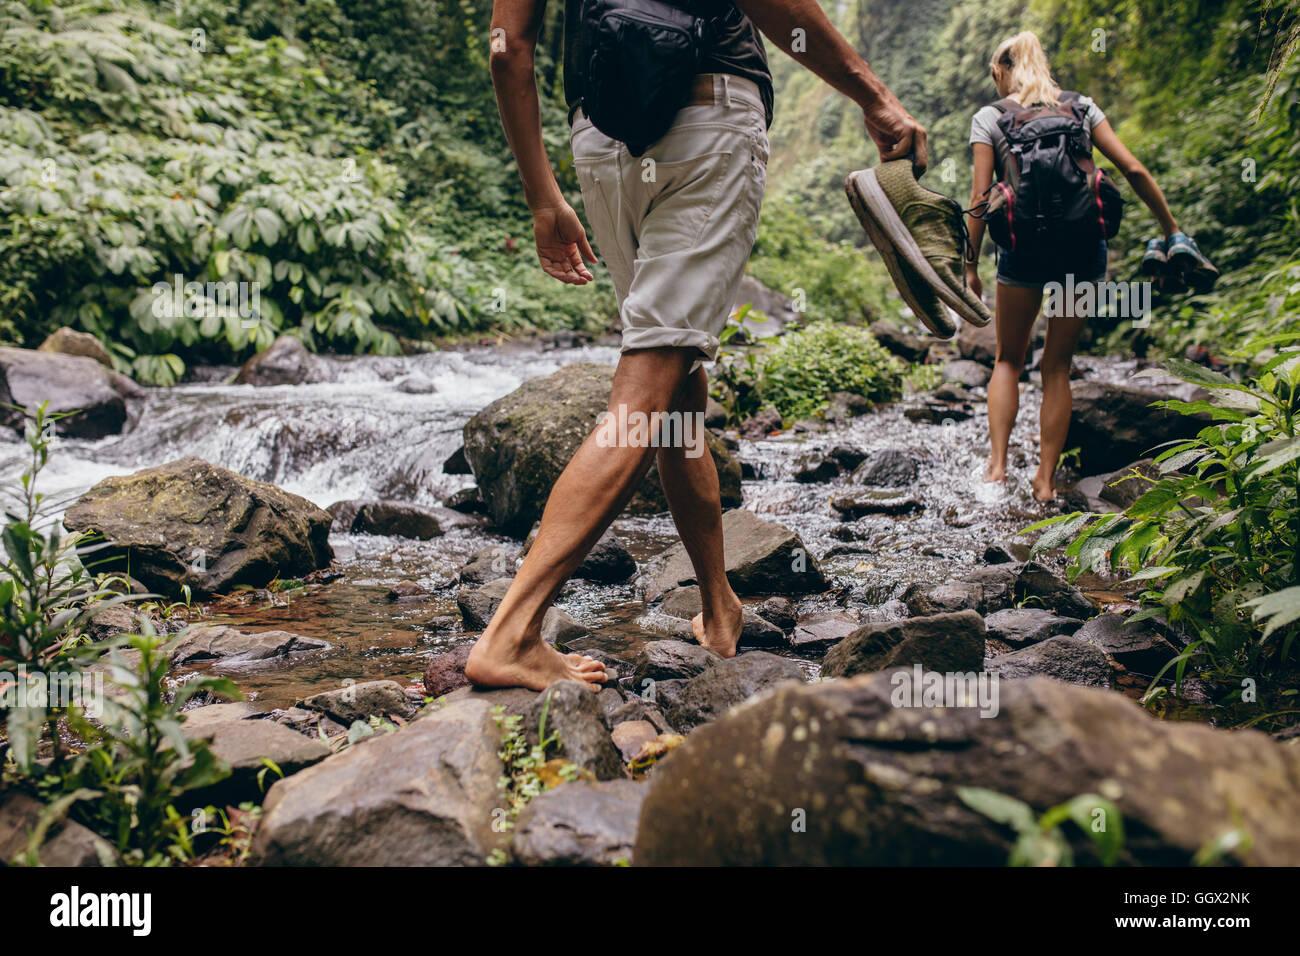 Bajo la sección foto de hombre y mujer cruzar el arroyo descalzas. Pareja paseando por el Creek, en el bosque con sus zapatos en la mano Foto de stock